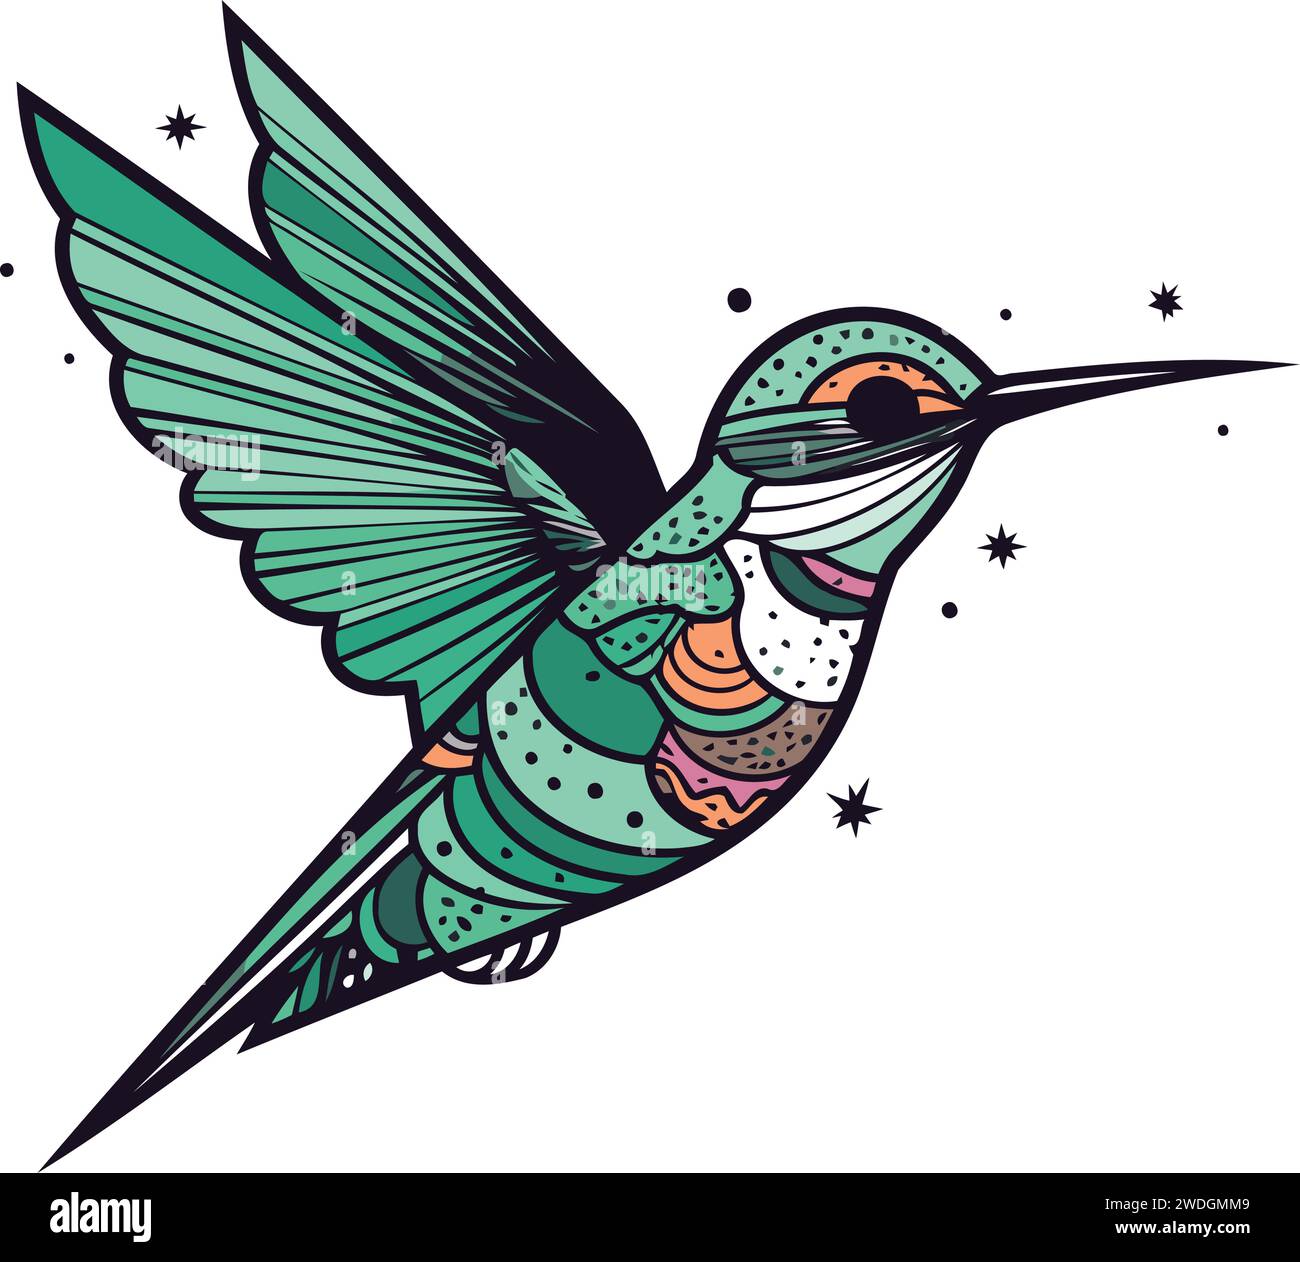 ArtStation - Hummingbird Tattoo Design